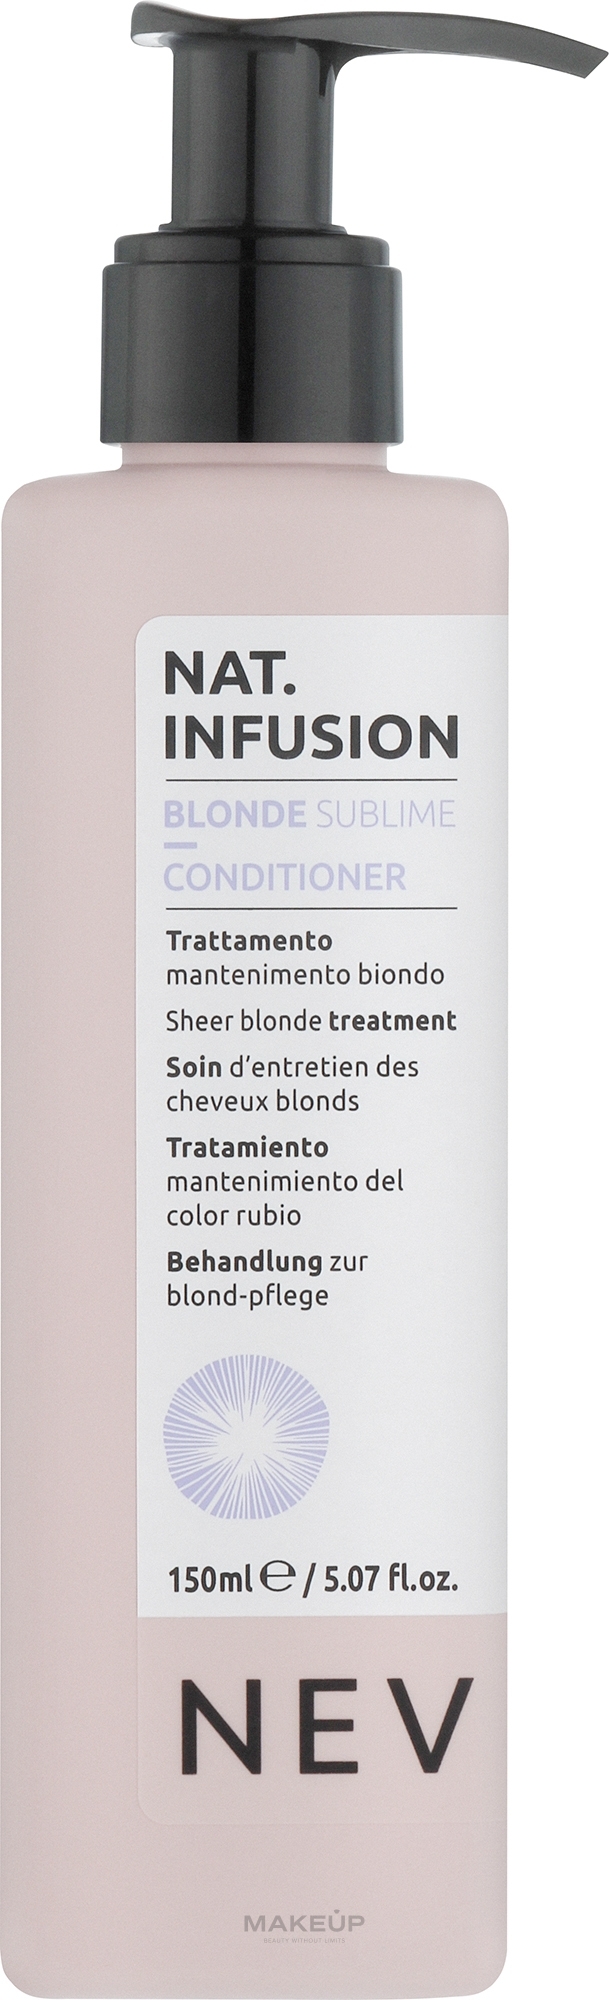 Крем-ополіскувач для нейтралізації жовтих відтінків на волоссі - Nevitaly Sheer Blonde Treatment — фото 150ml